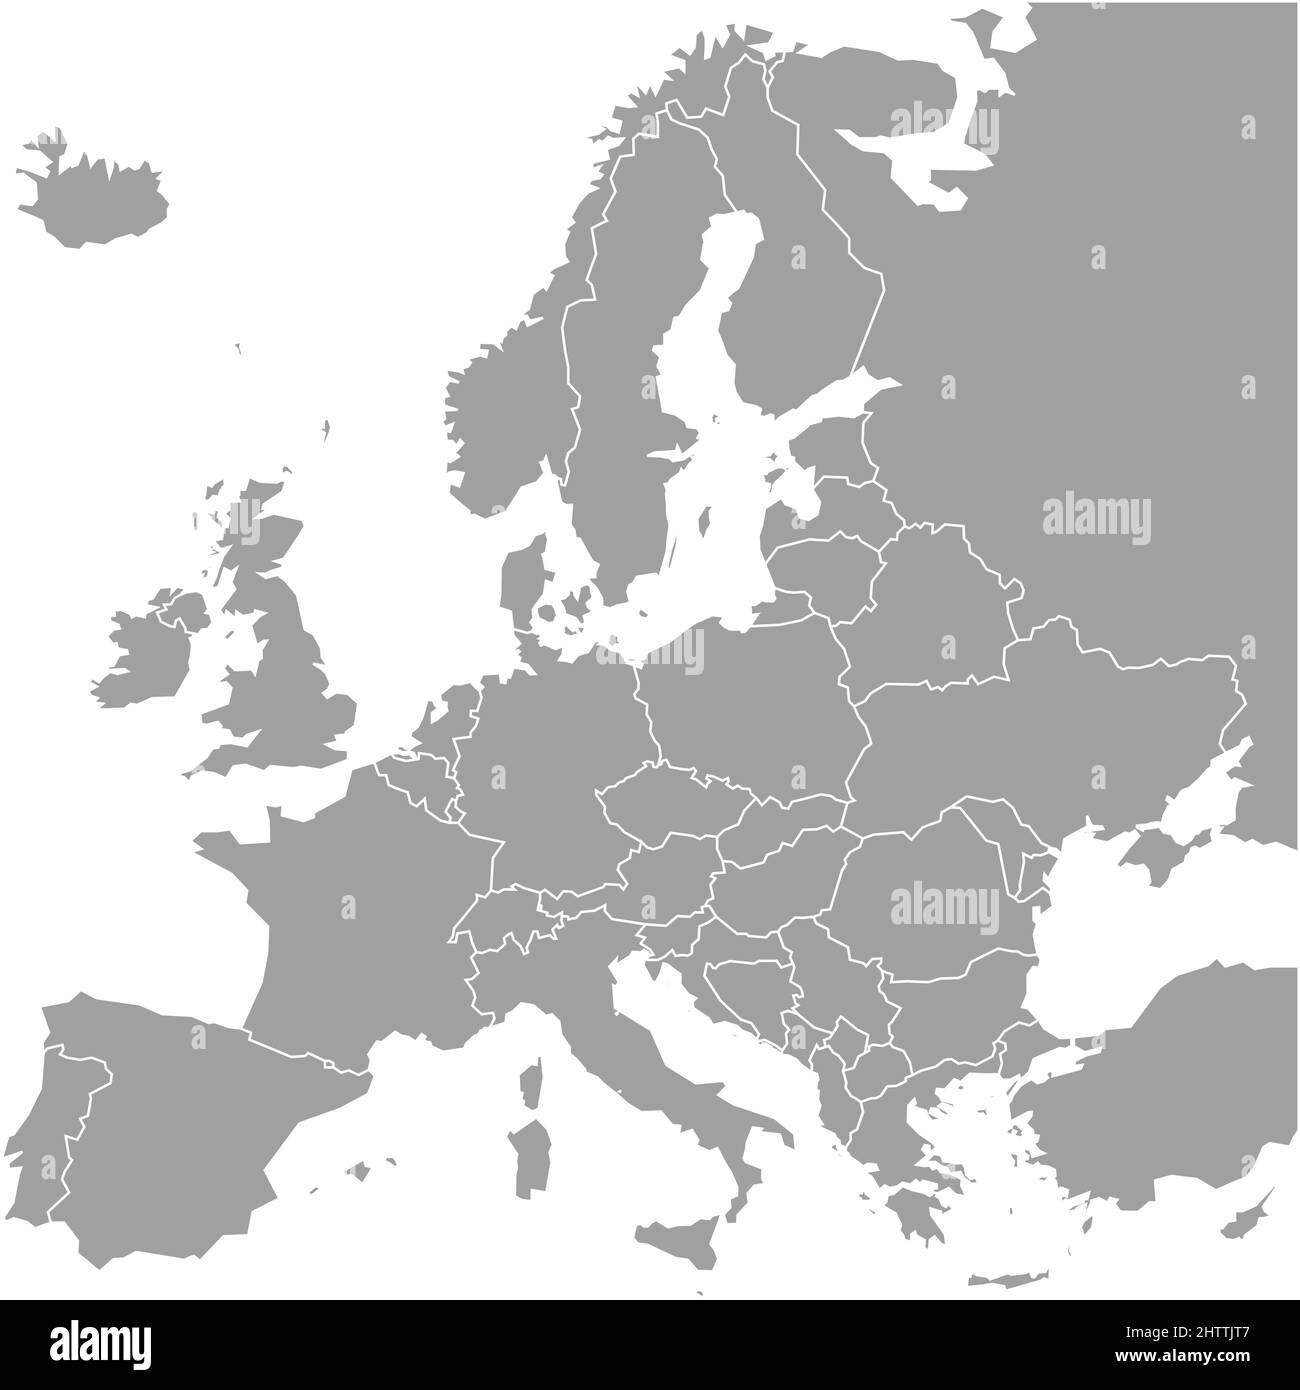 Carta bianca dell'Europa. Mappa vettoriale semplificata in grigio con bordi bianchi su sfondo bianco Illustrazione Vettoriale